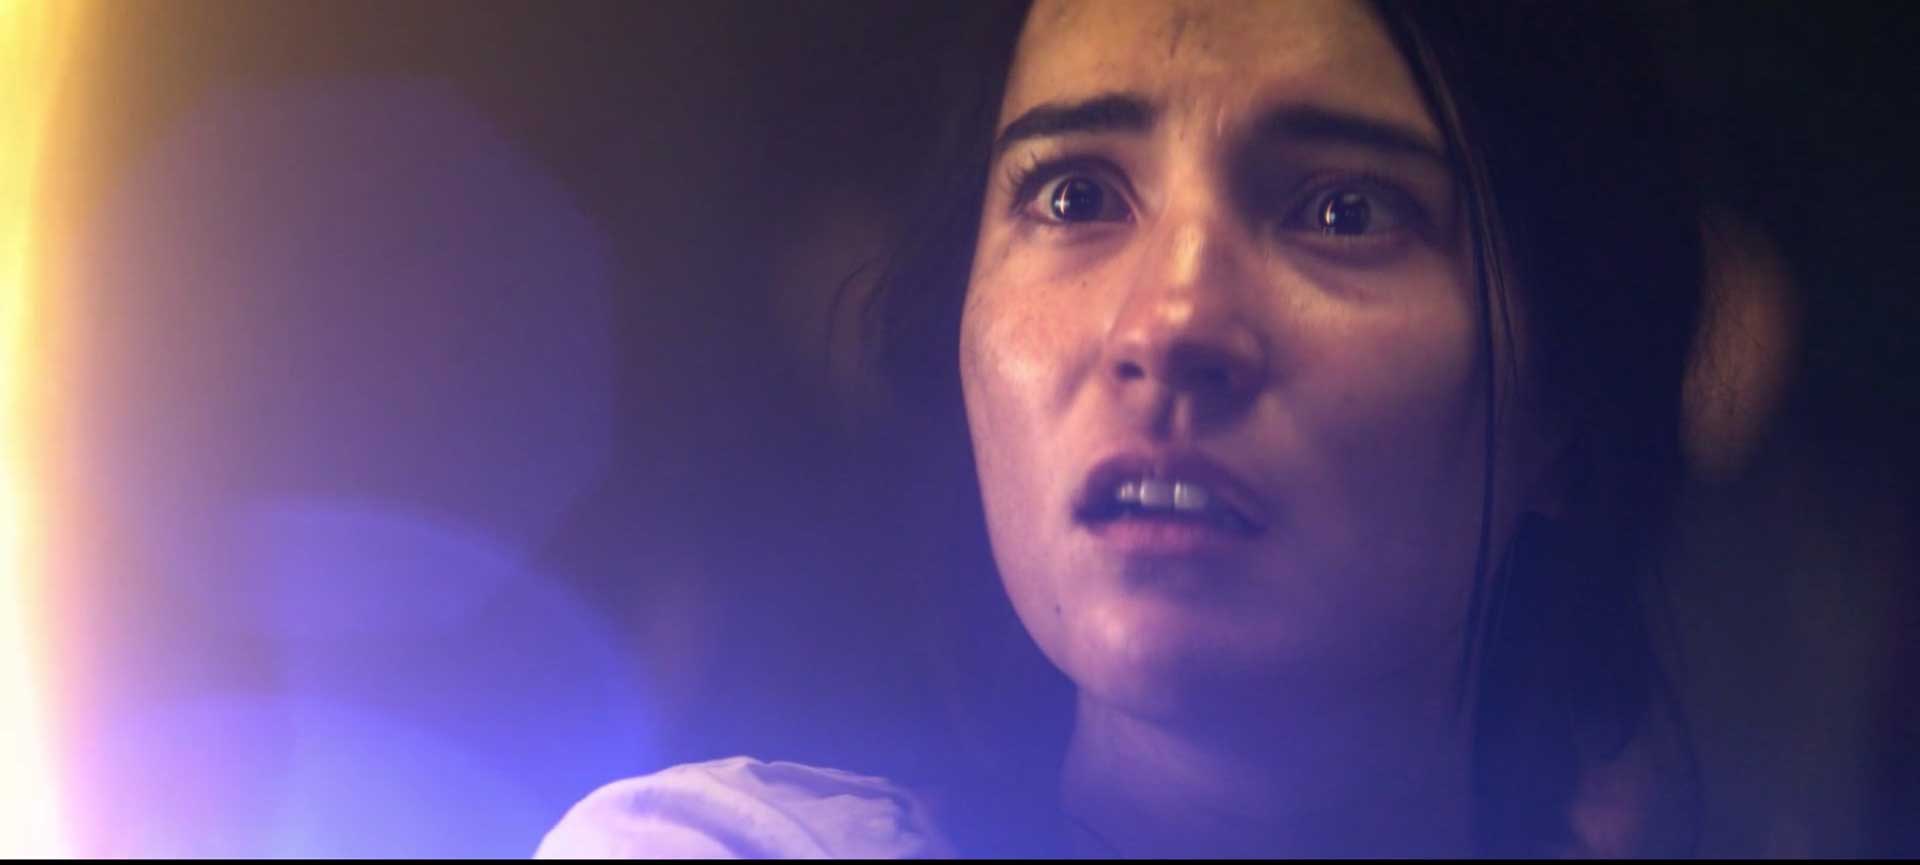 فوران نور از وجود جسی می لی در نقش الینا استارکوف سریال فانتزی سایه و استخوان شبکه آنلاین نتفلیکس و نگاه خیره بازیگر